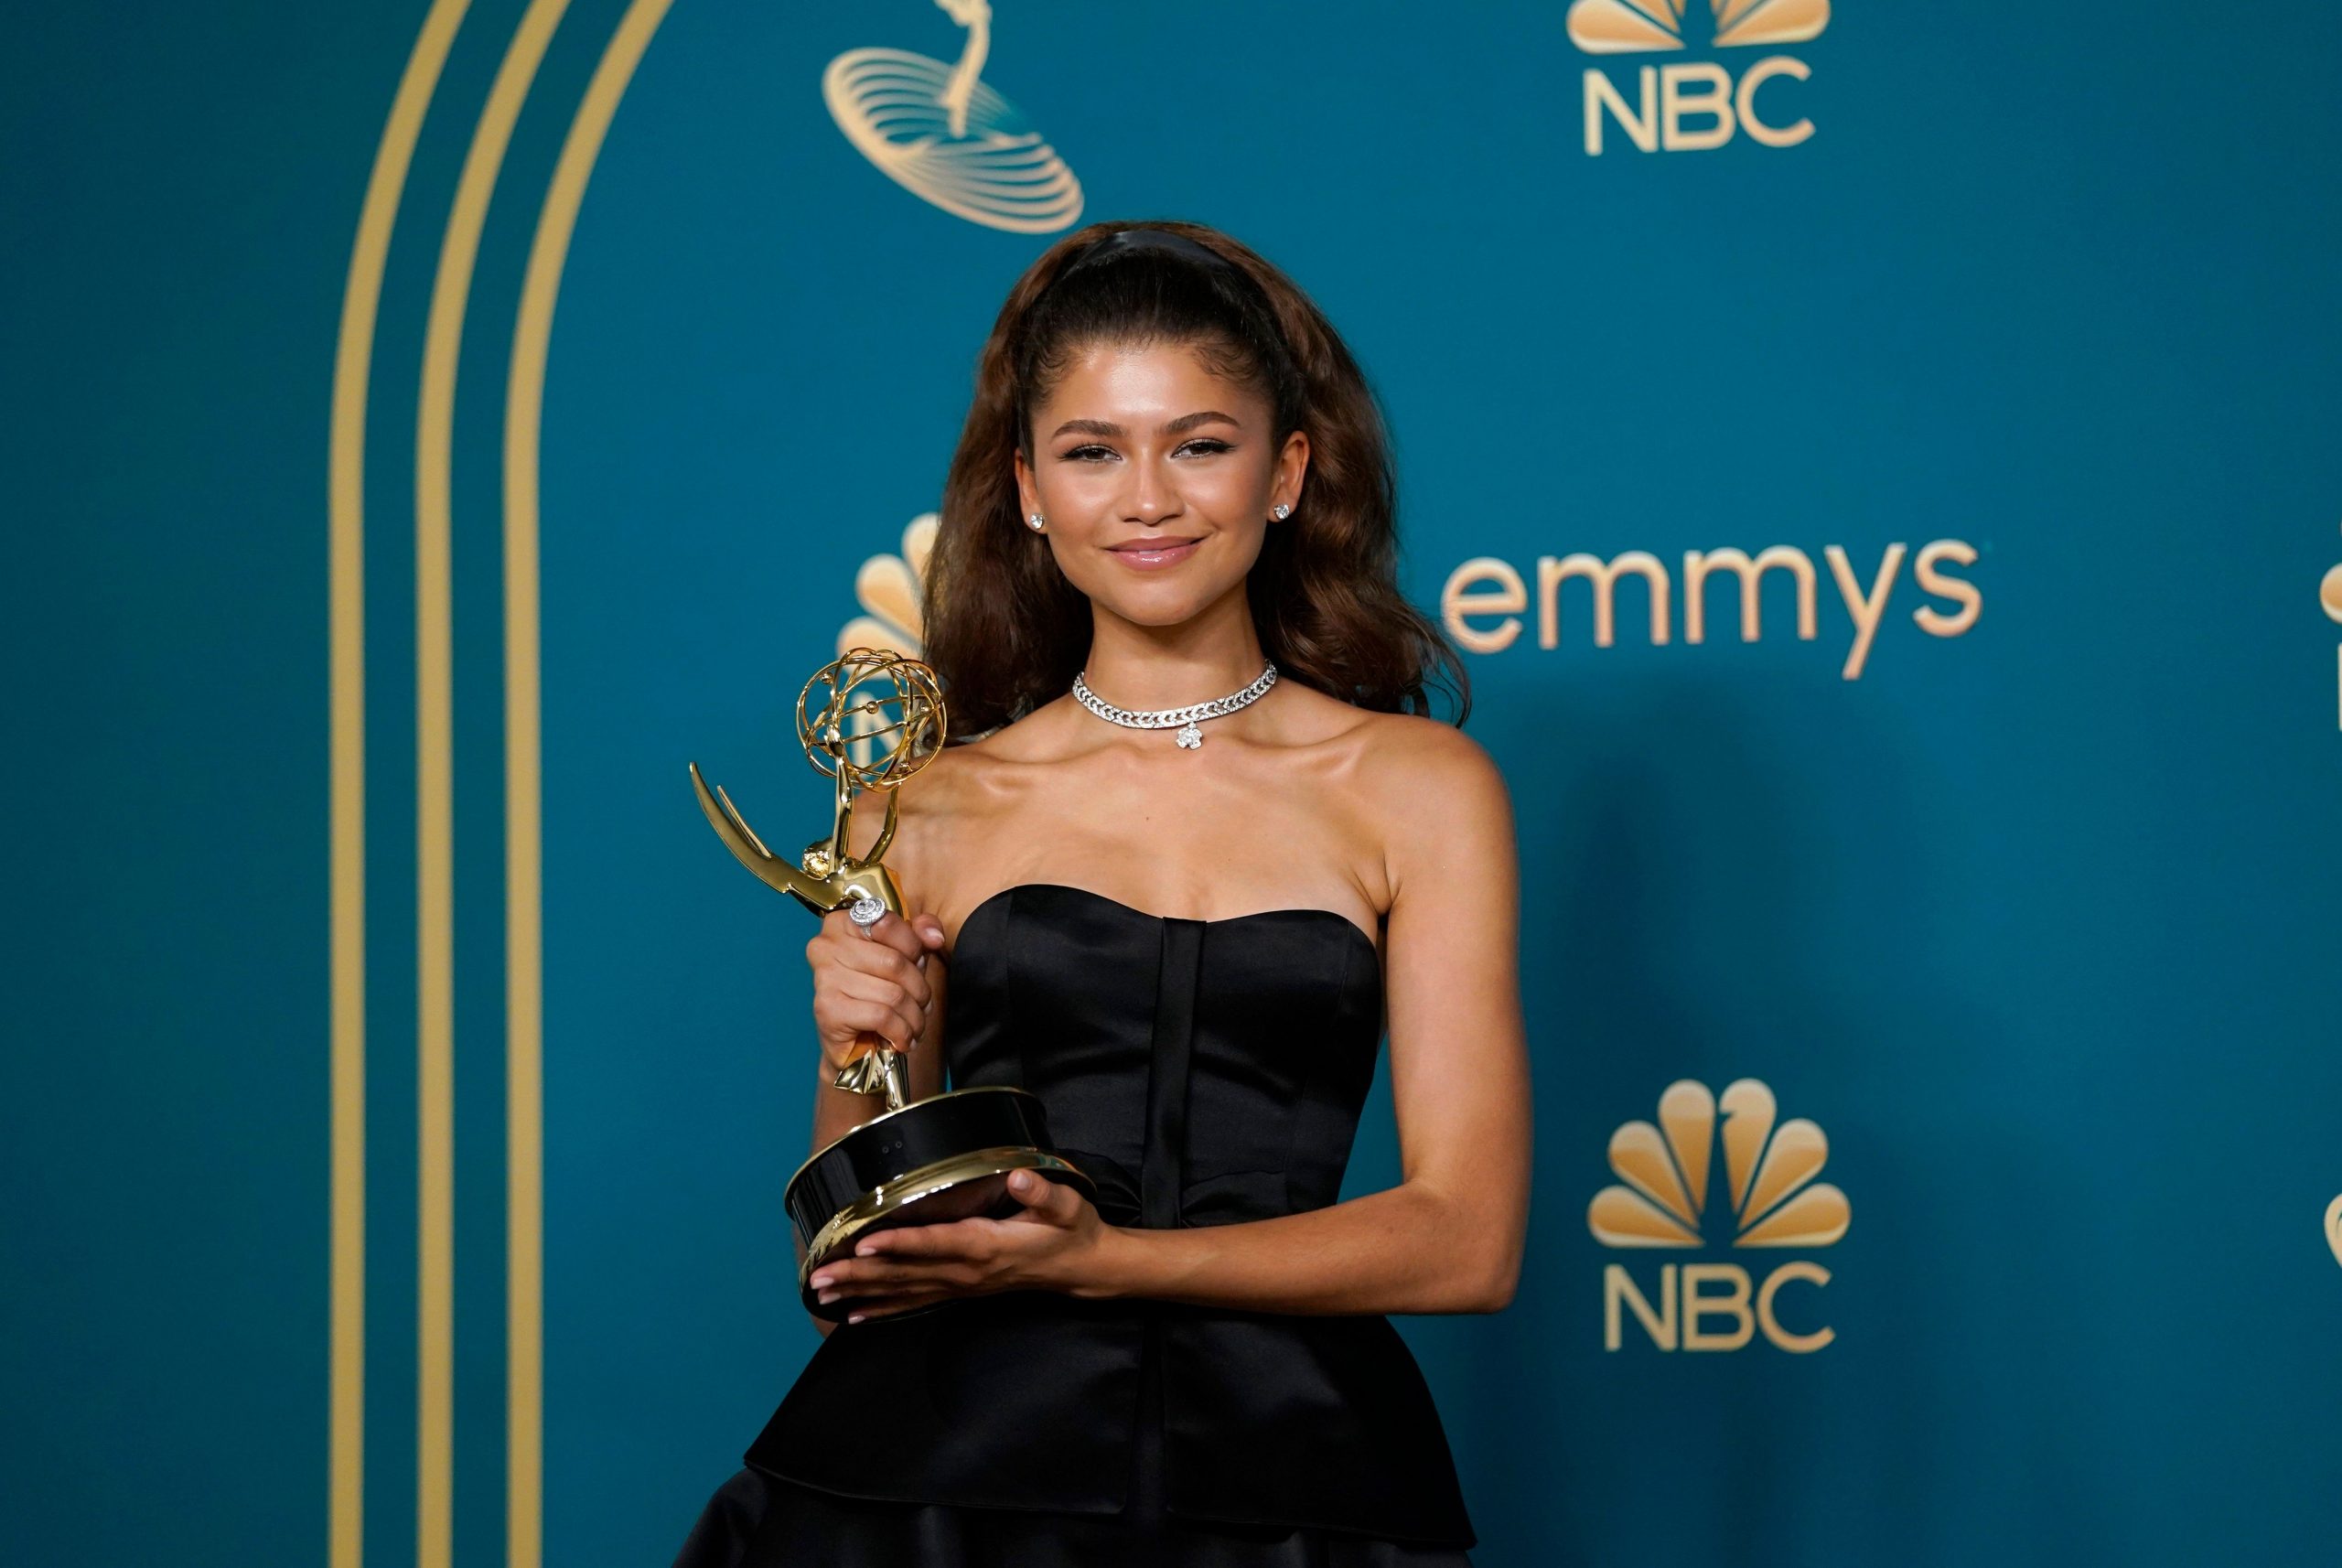 Emmy Awards 2022 winners list: Zendaya बेस्ट एक्ट्रेस तो Lee Se Young को मिला बेस्ट एक्टर का अवॉर्ड